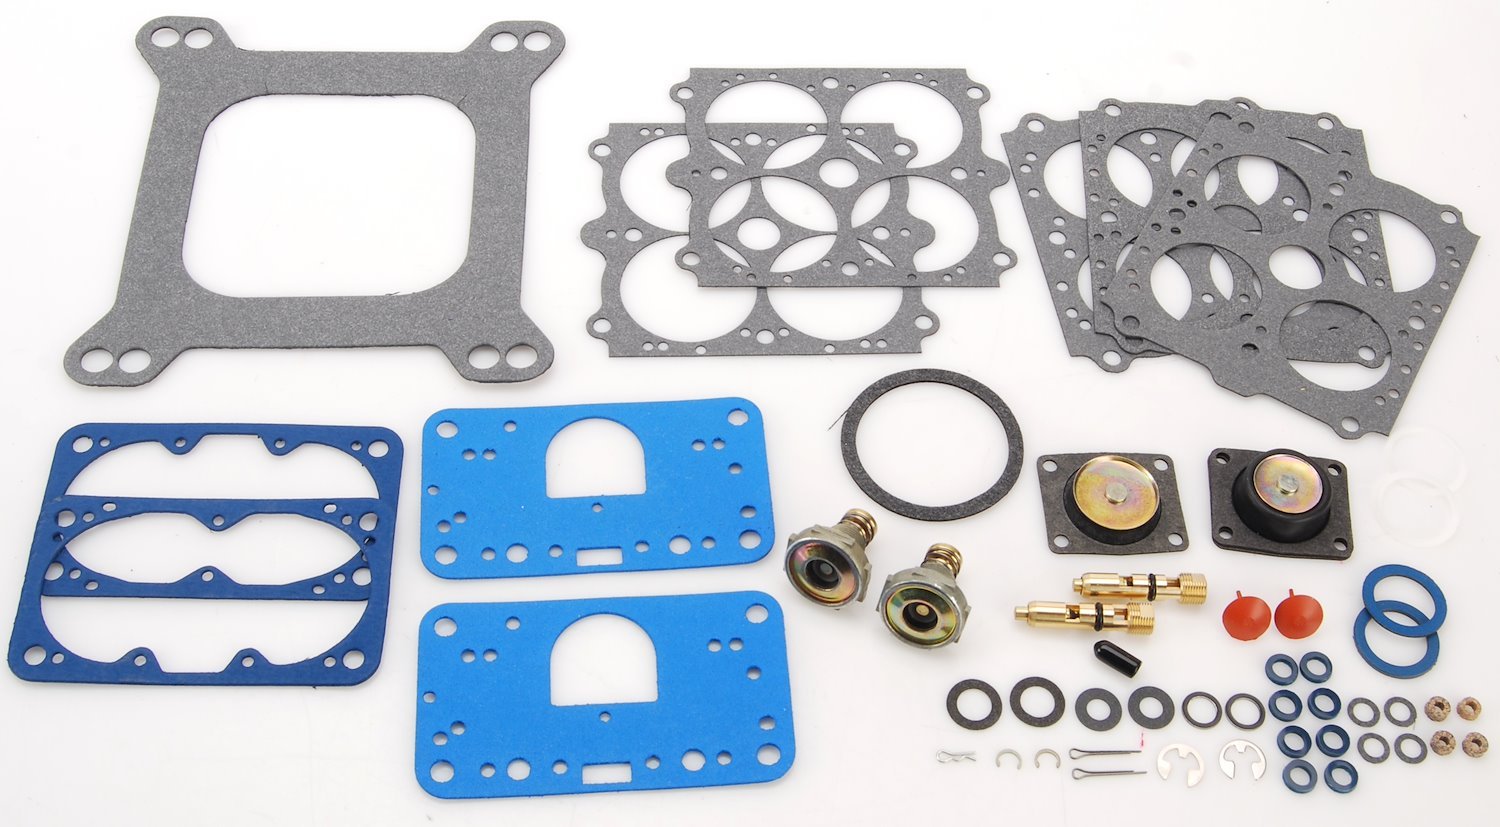 Carburetor Rebuild Kit For 4150 Models